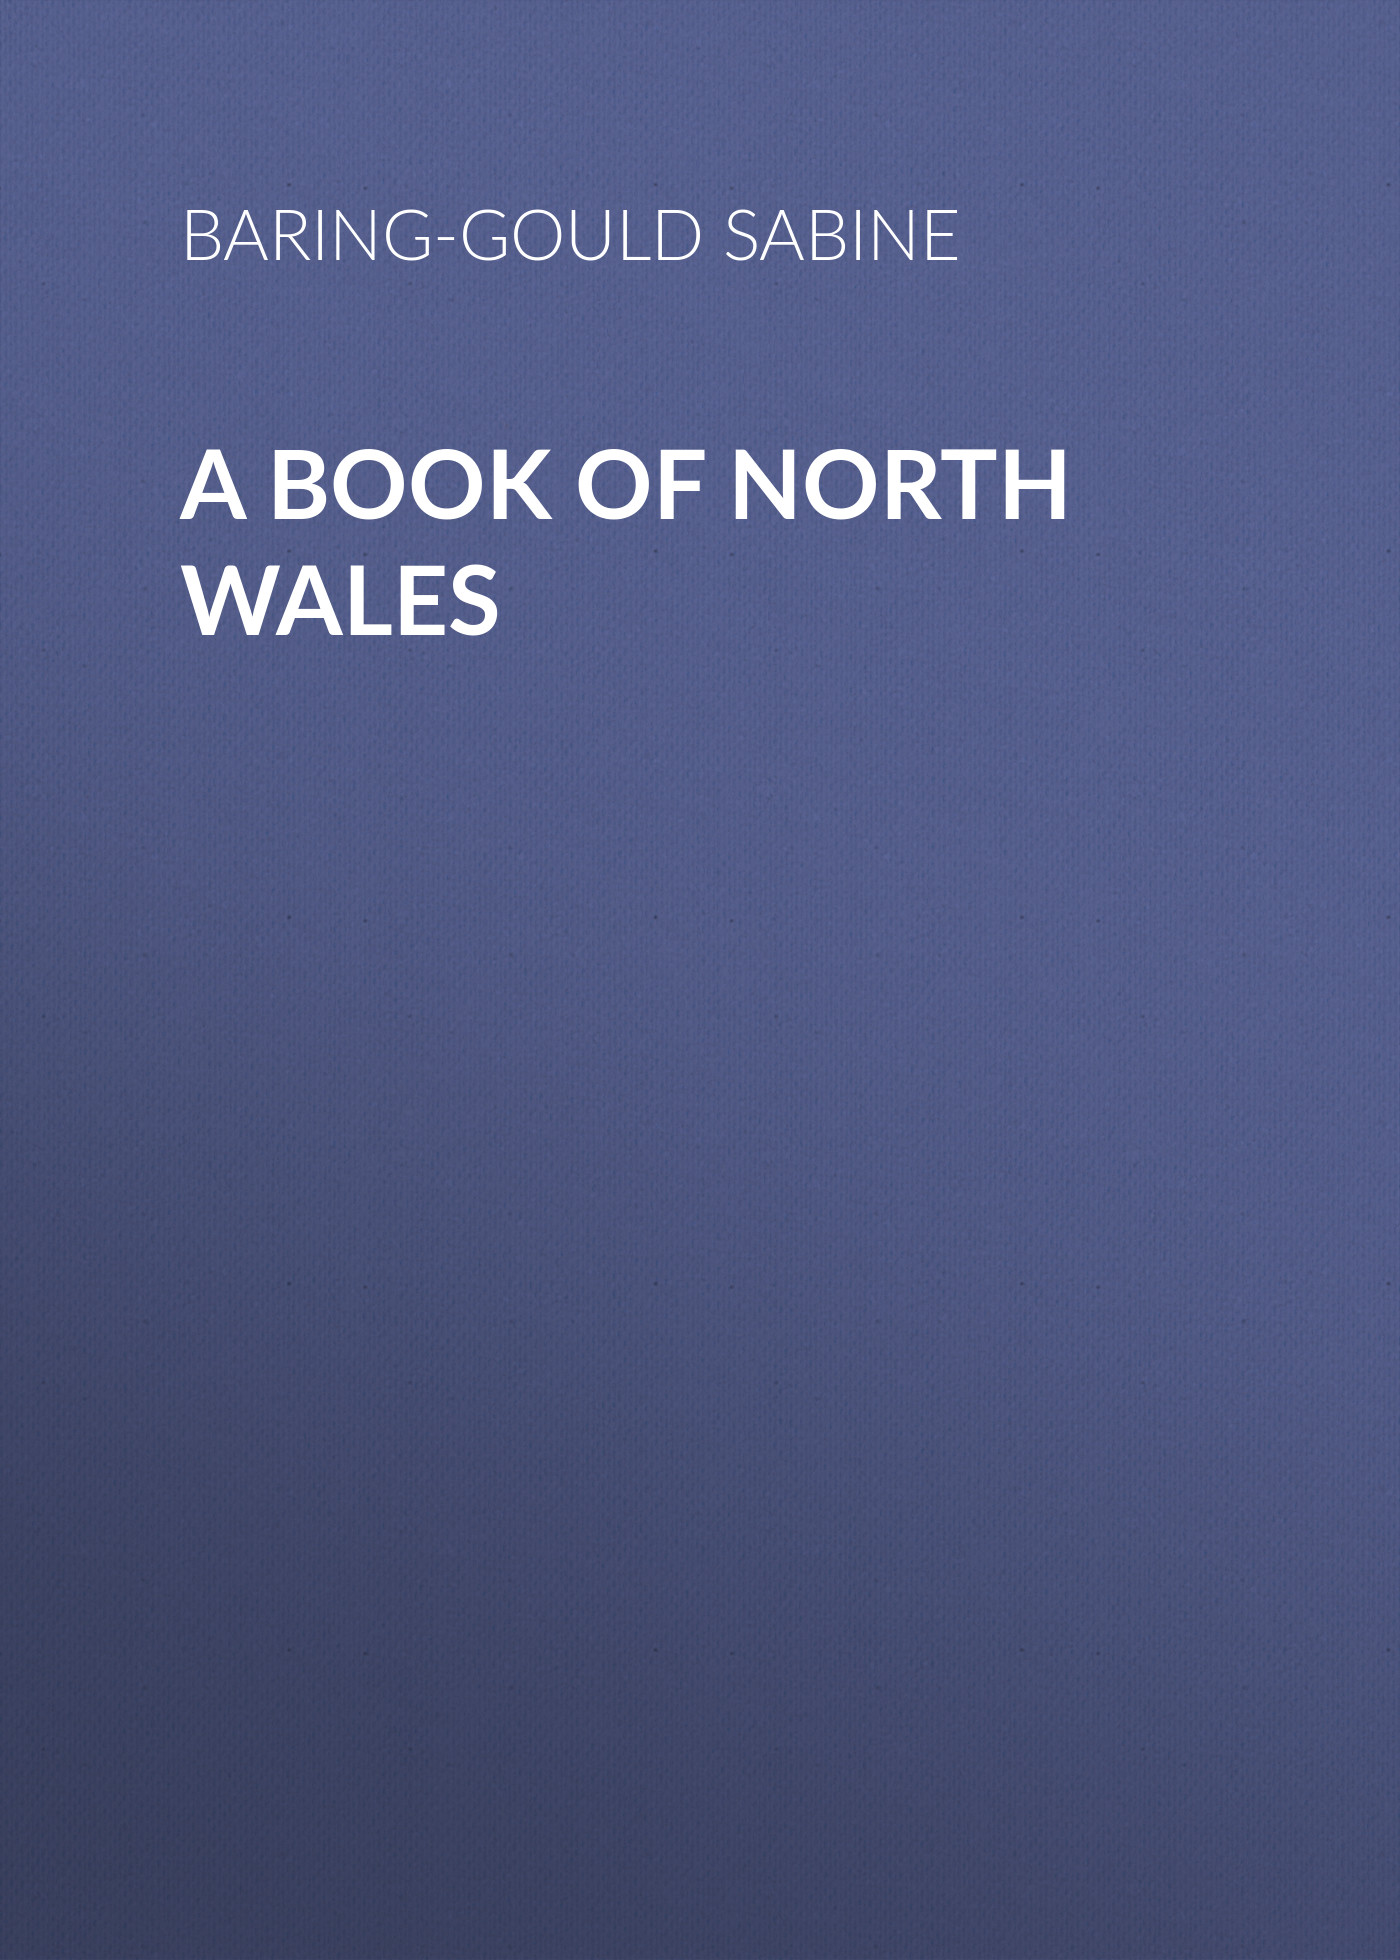 Книга A Book of North Wales из серии , созданная Sabine Baring-Gould, может относится к жанру Зарубежная старинная литература, Зарубежная классика. Стоимость электронной книги A Book of North Wales с идентификатором 24167924 составляет 0 руб.